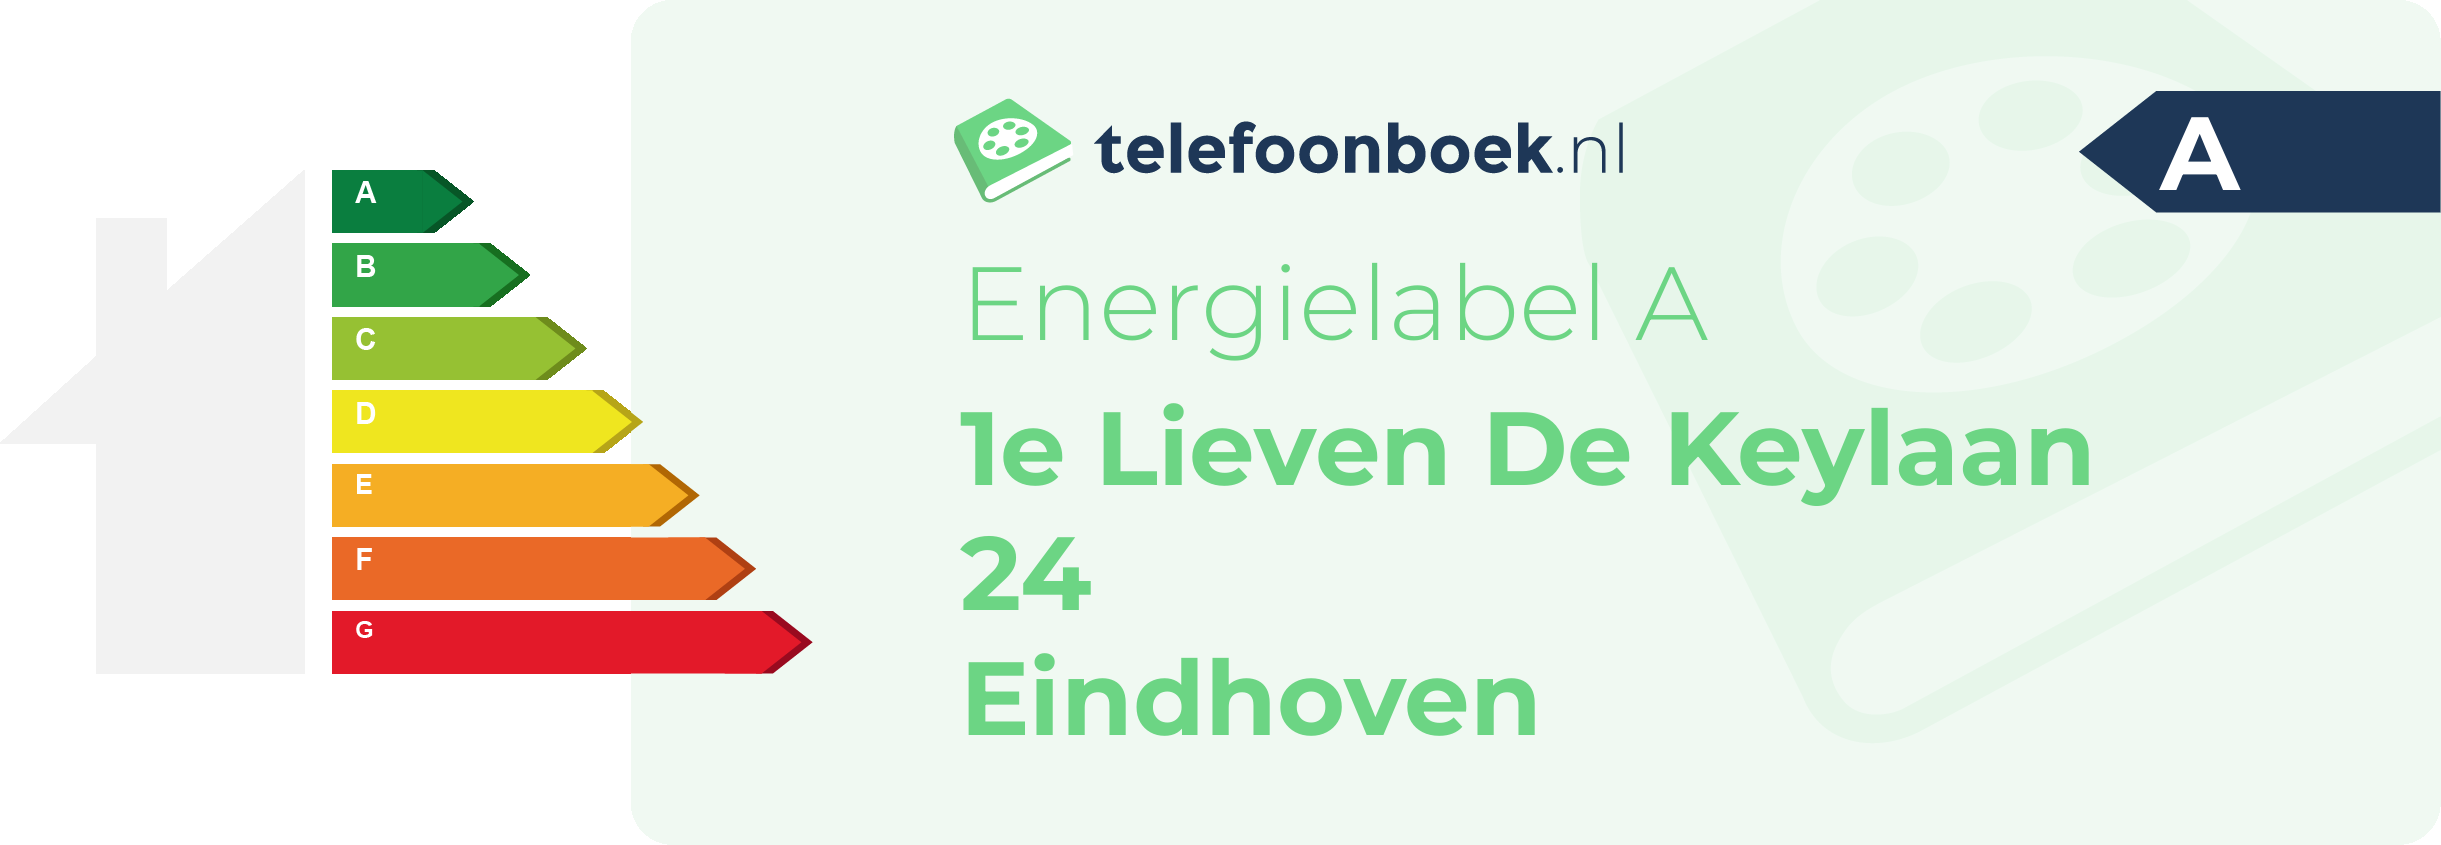 Energielabel 1e Lieven De Keylaan 24 Eindhoven